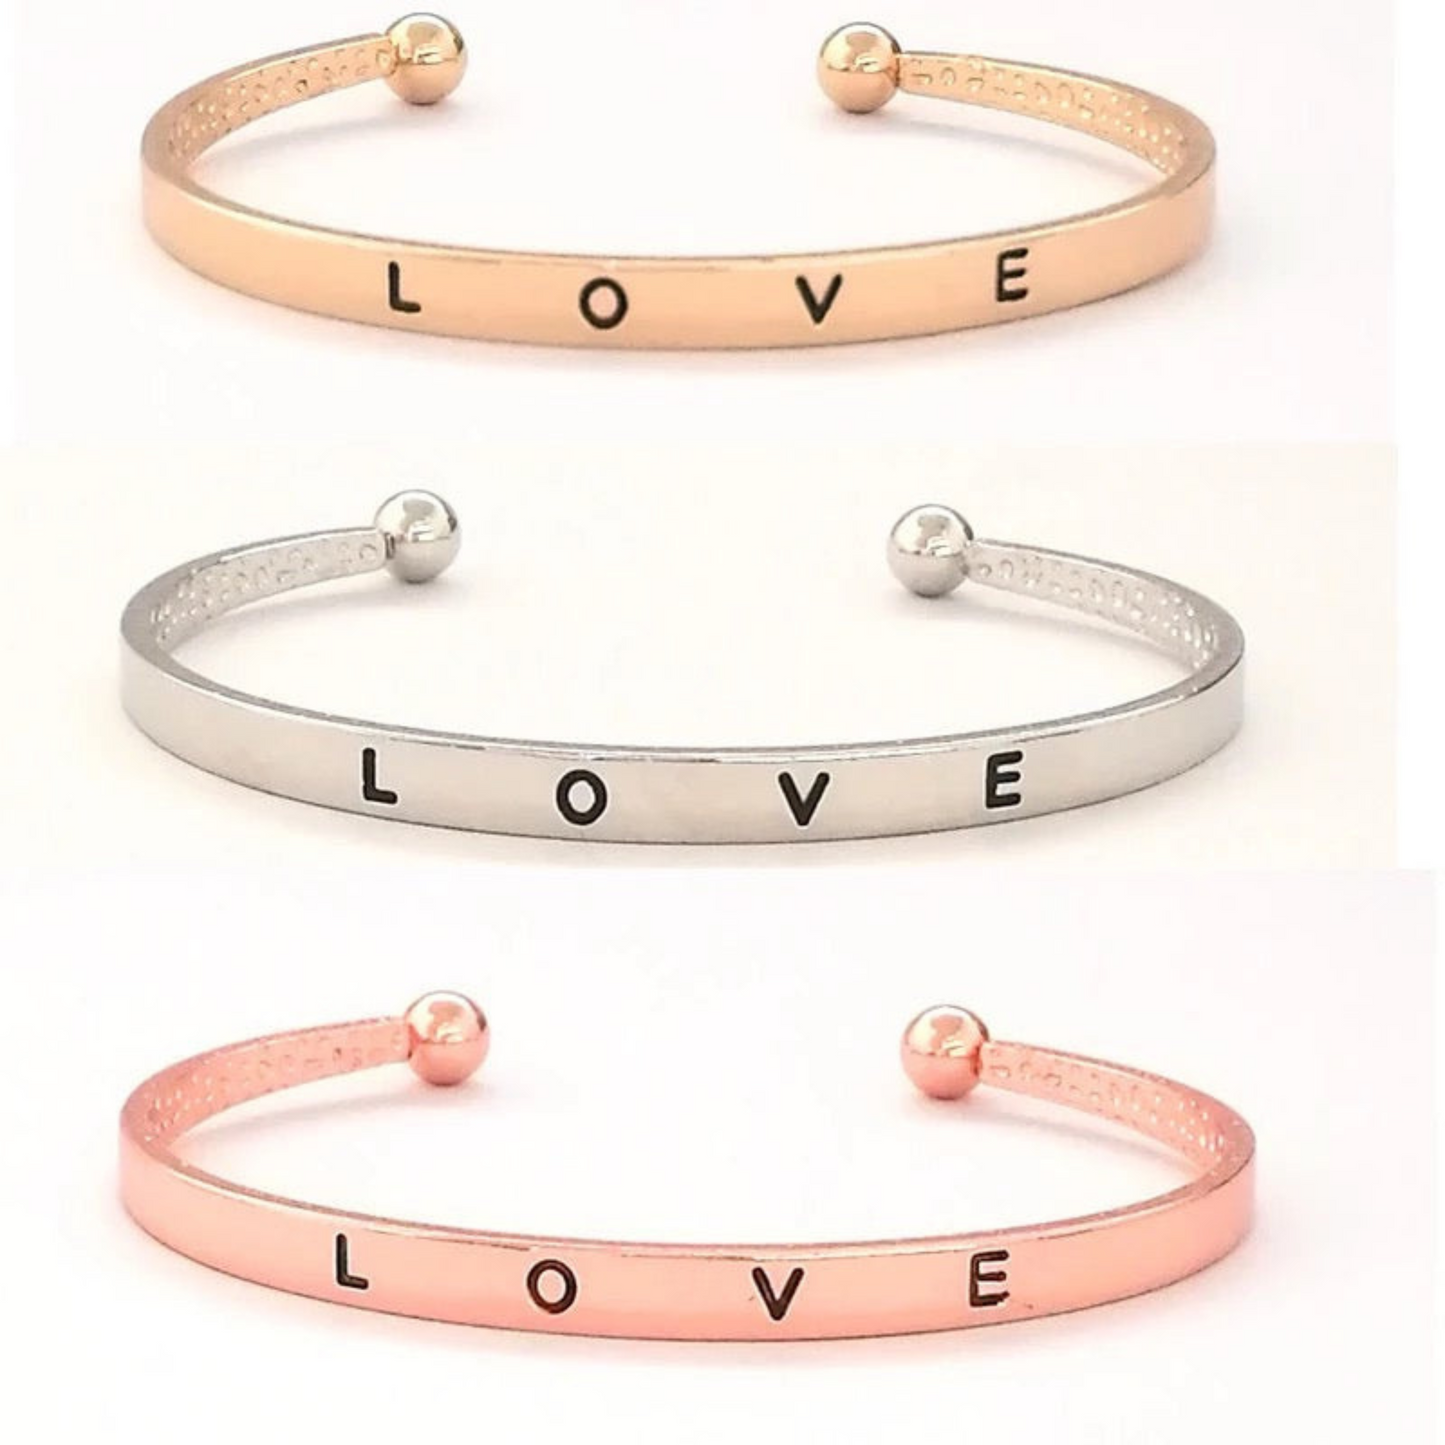 LOVE Cuff Bracelet